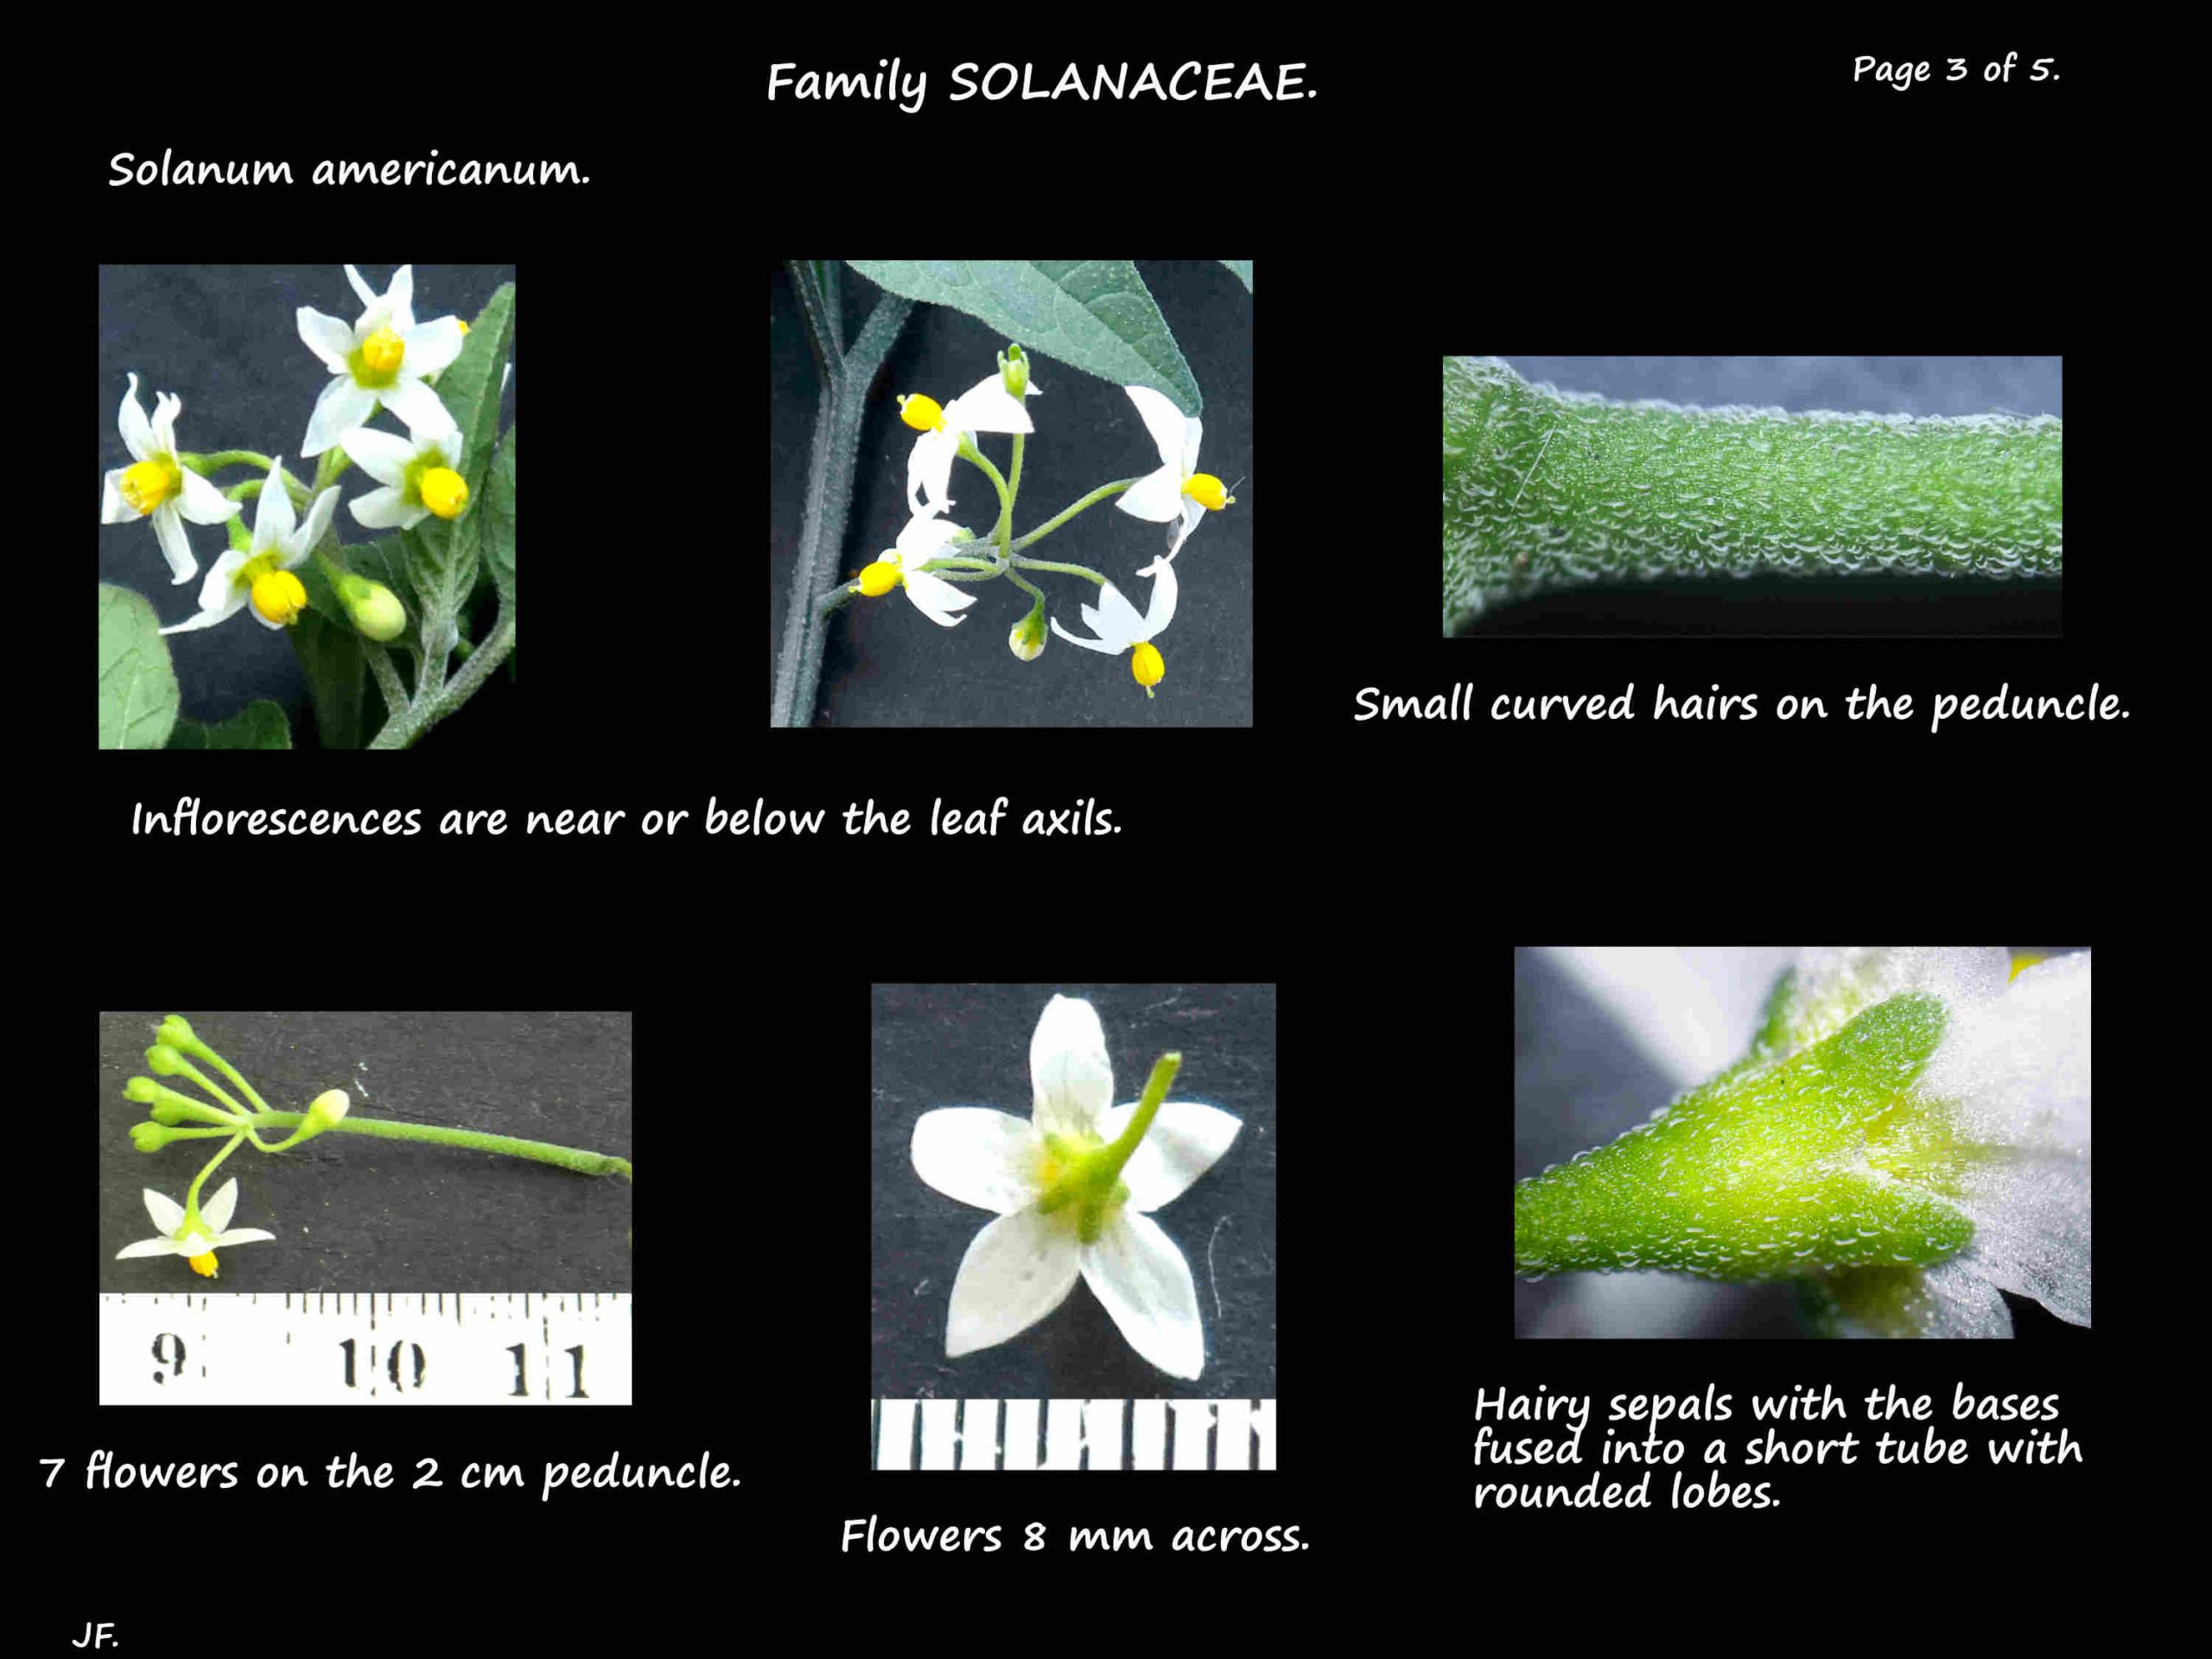 3 Flowers of Solanum americanum